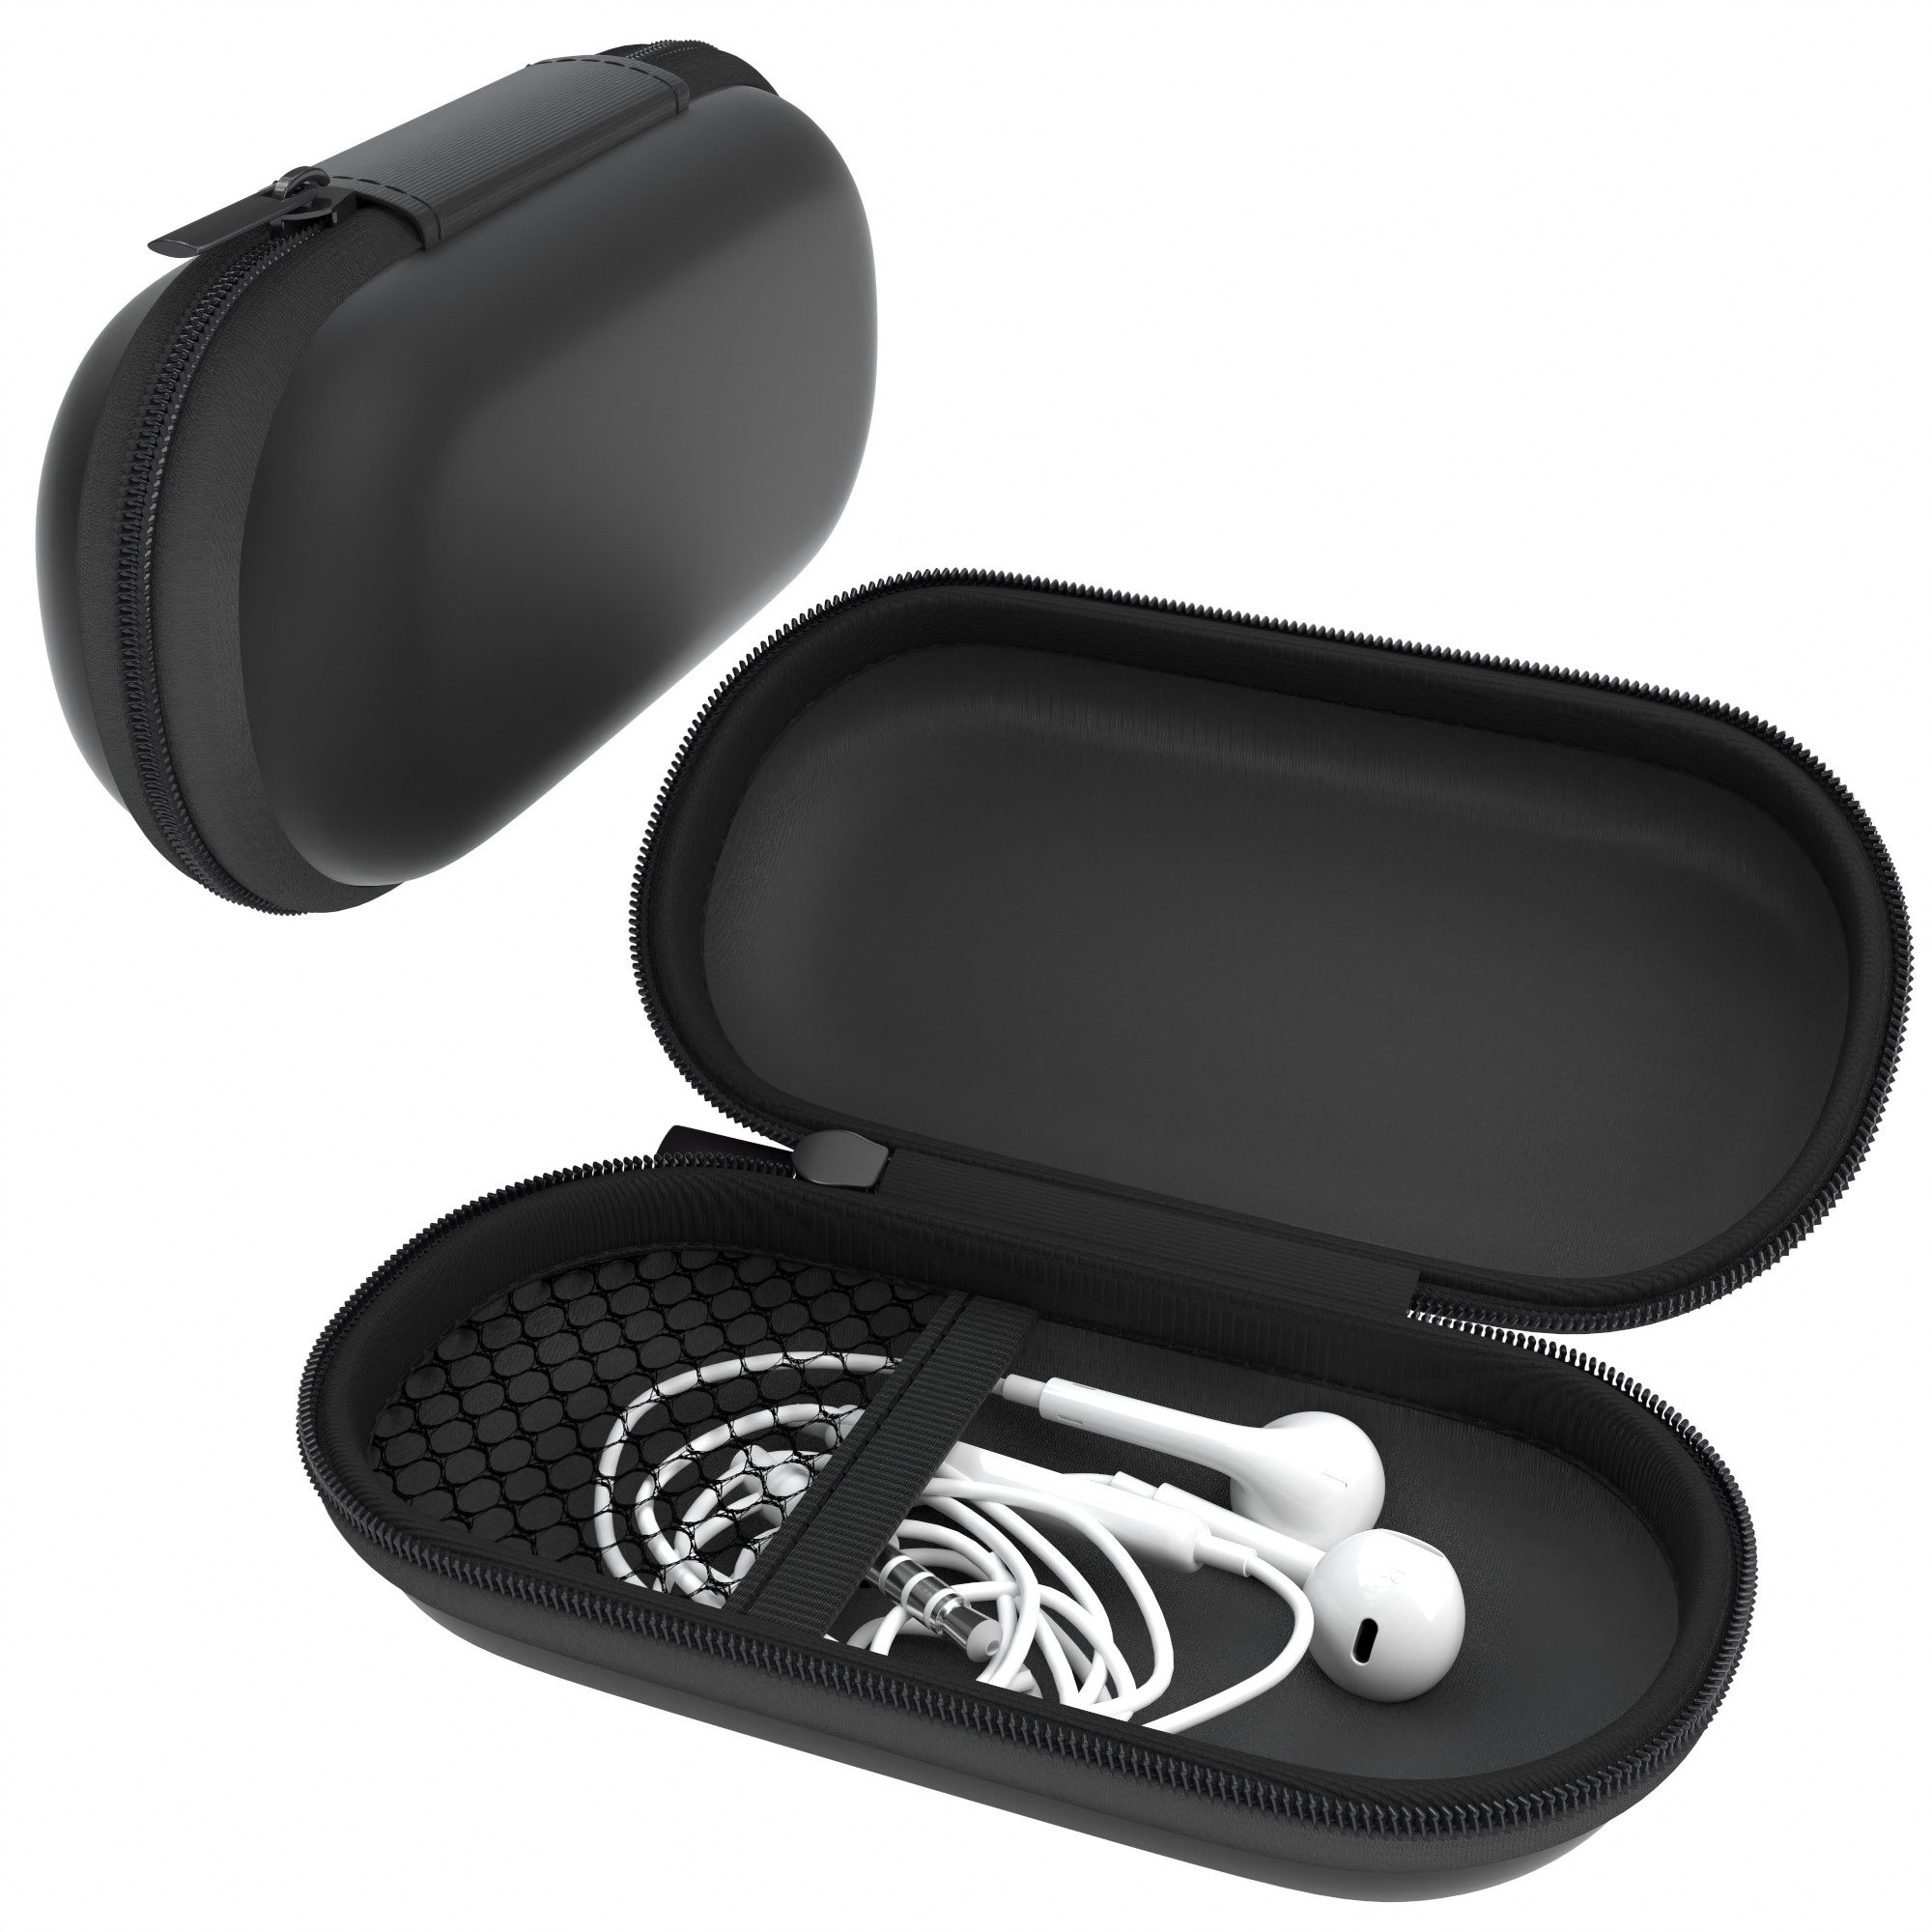 EAZY CASE Kopfhörer-Schutzhülle Universal Tasche für In-Ear Kopfhörer mit Netzfach, Tasche für Kopfhörer mit Netzfach Hardcase Schutztasche klein Schwarz